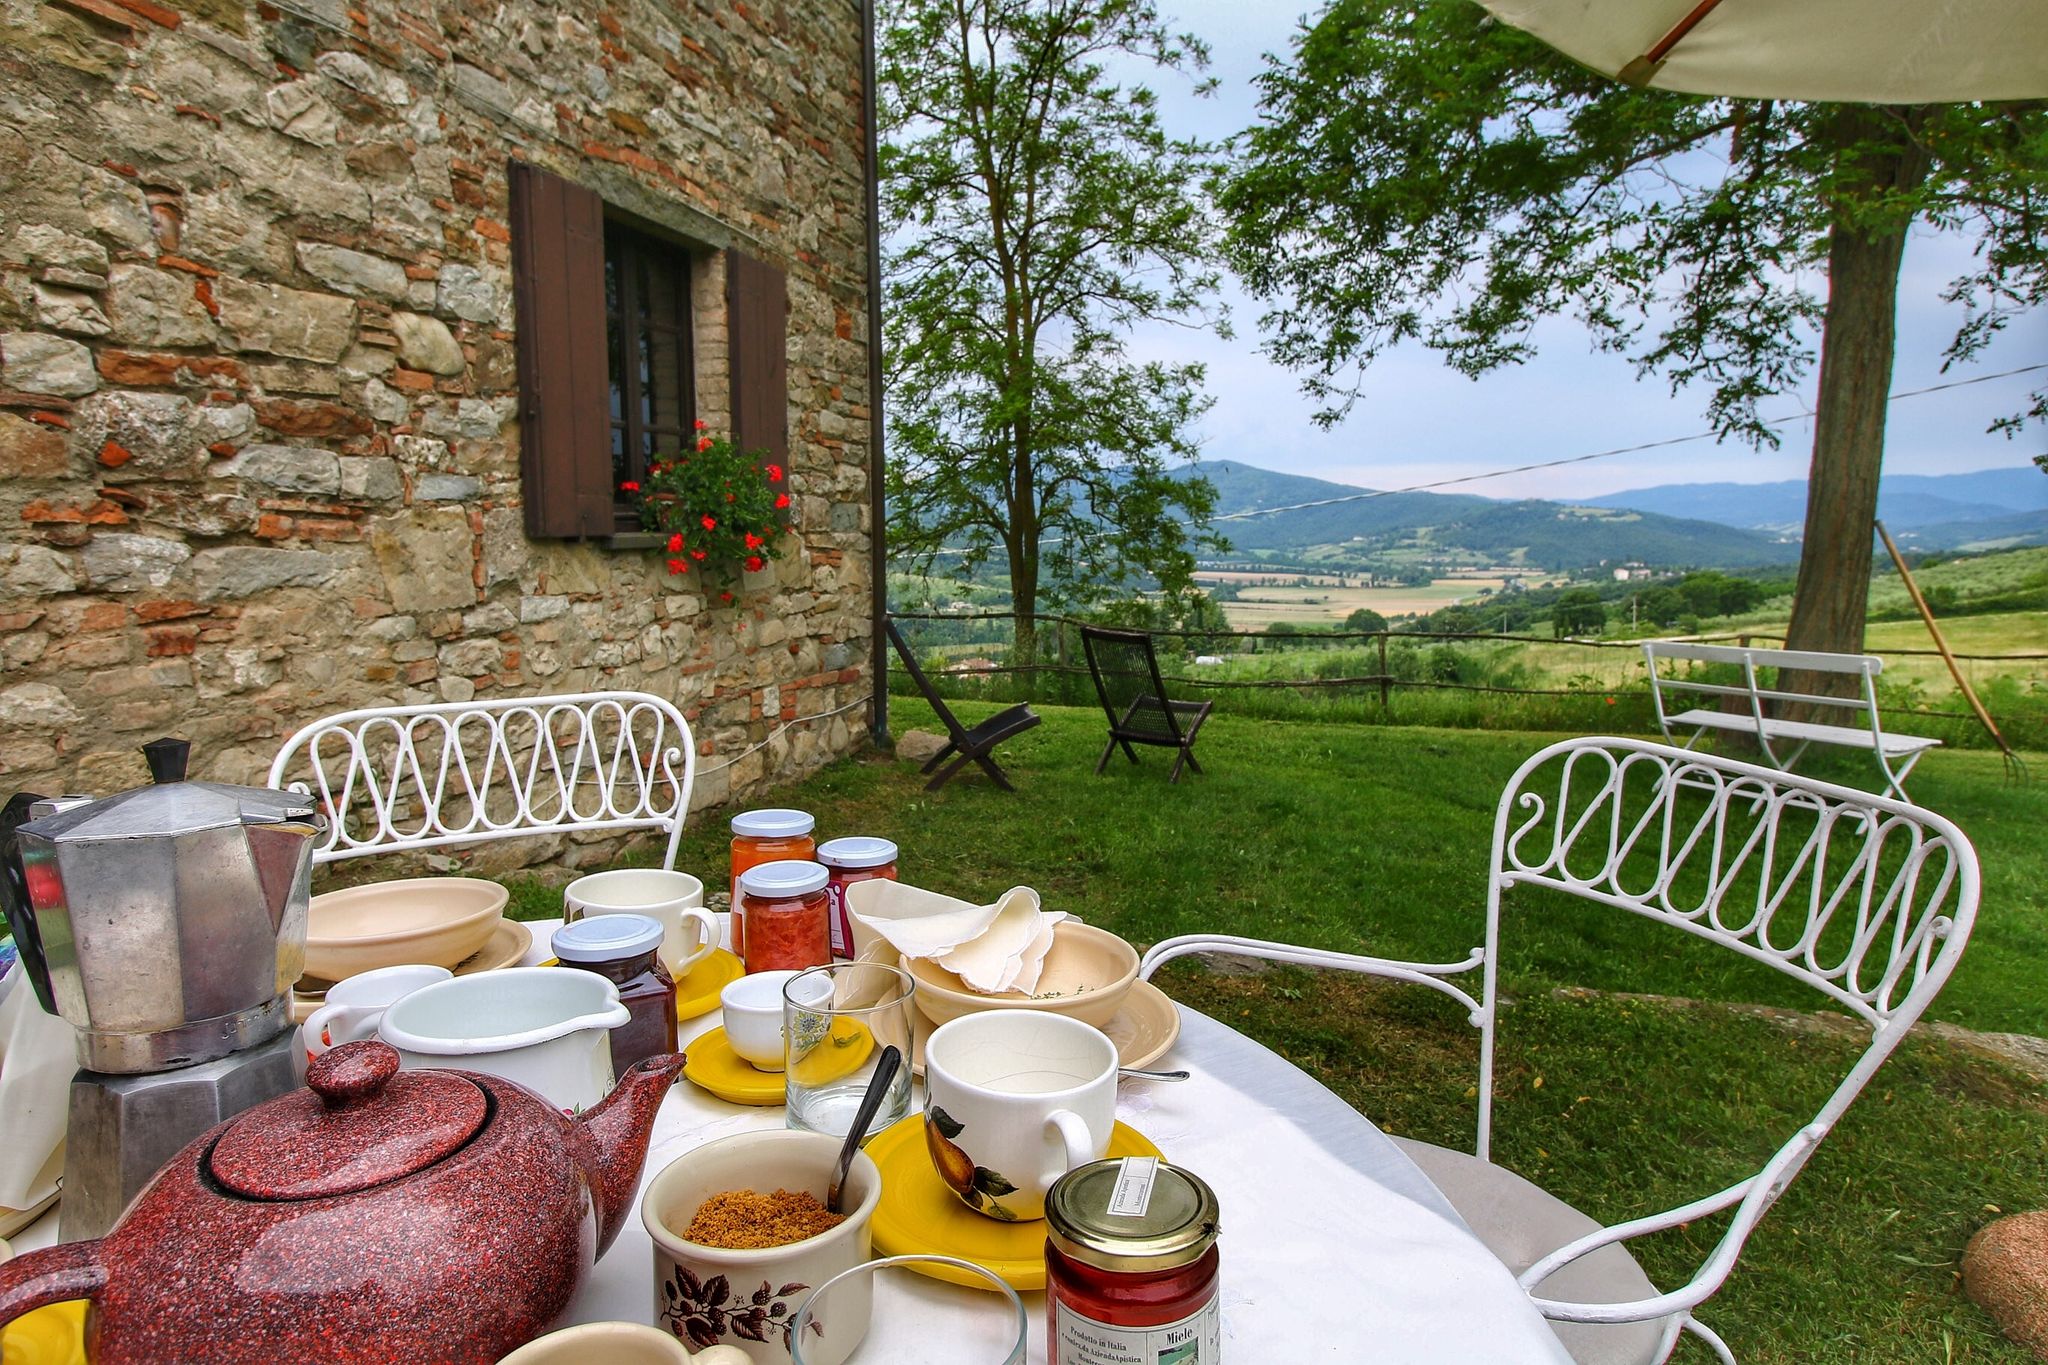 Elegant landhuis in Umbrië met uitzicht op de vallei